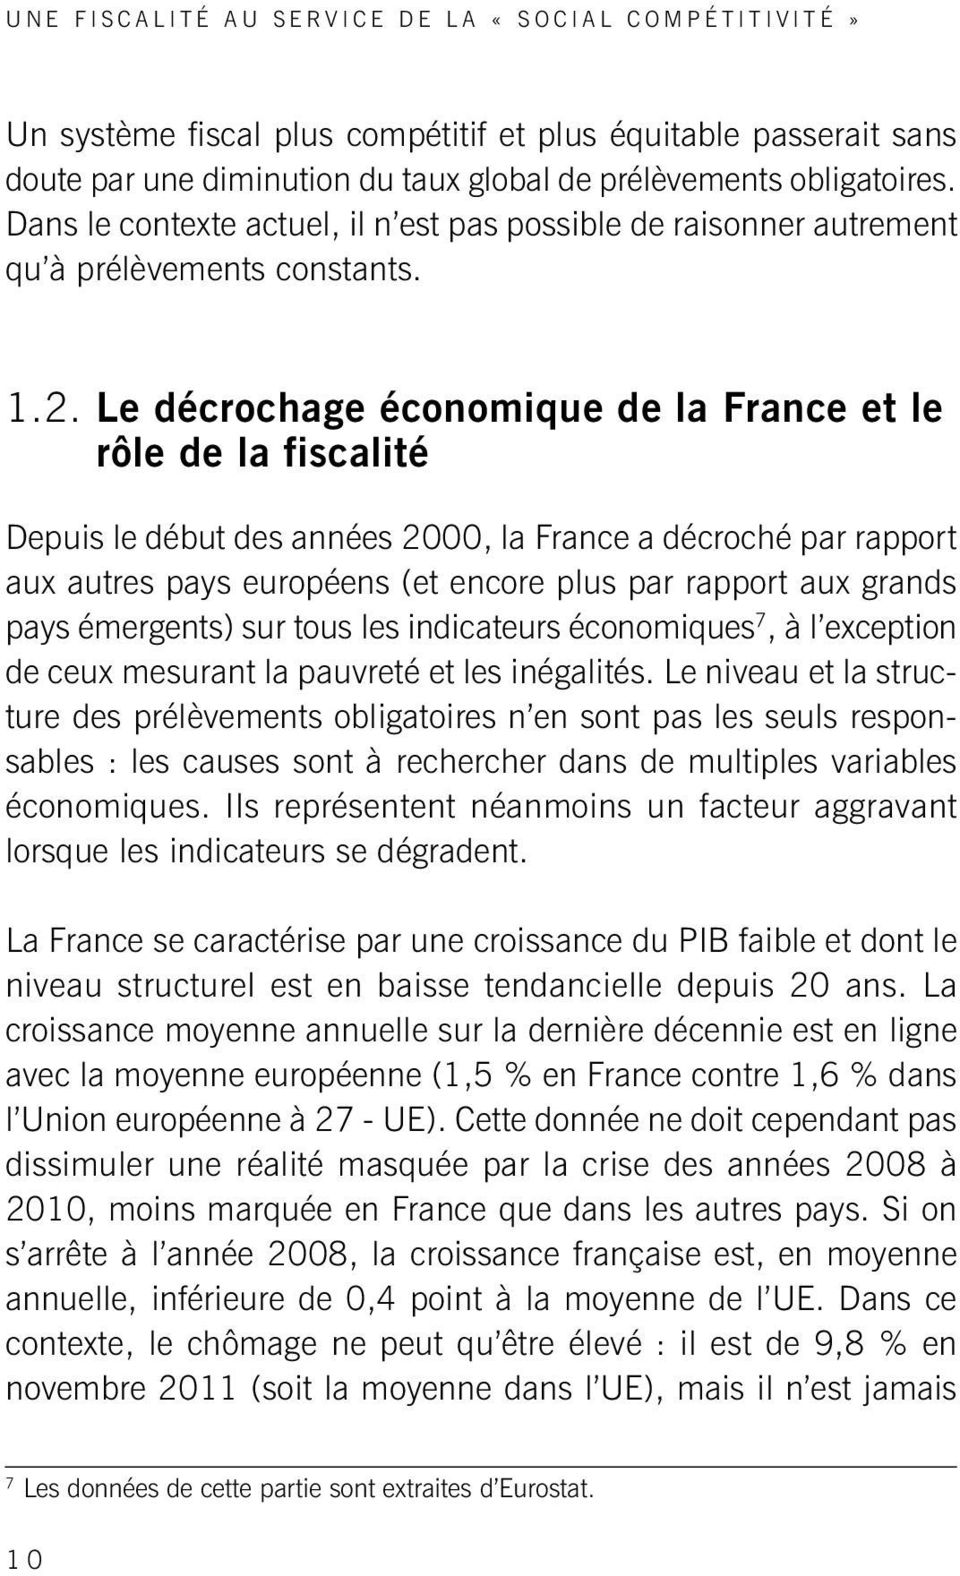 Le décrochage économique de la France et le rôle de la fiscalité Depuis le début des années 2000, la France a décroché par rapport aux autres pays européens (et encore plus par rapport aux grands